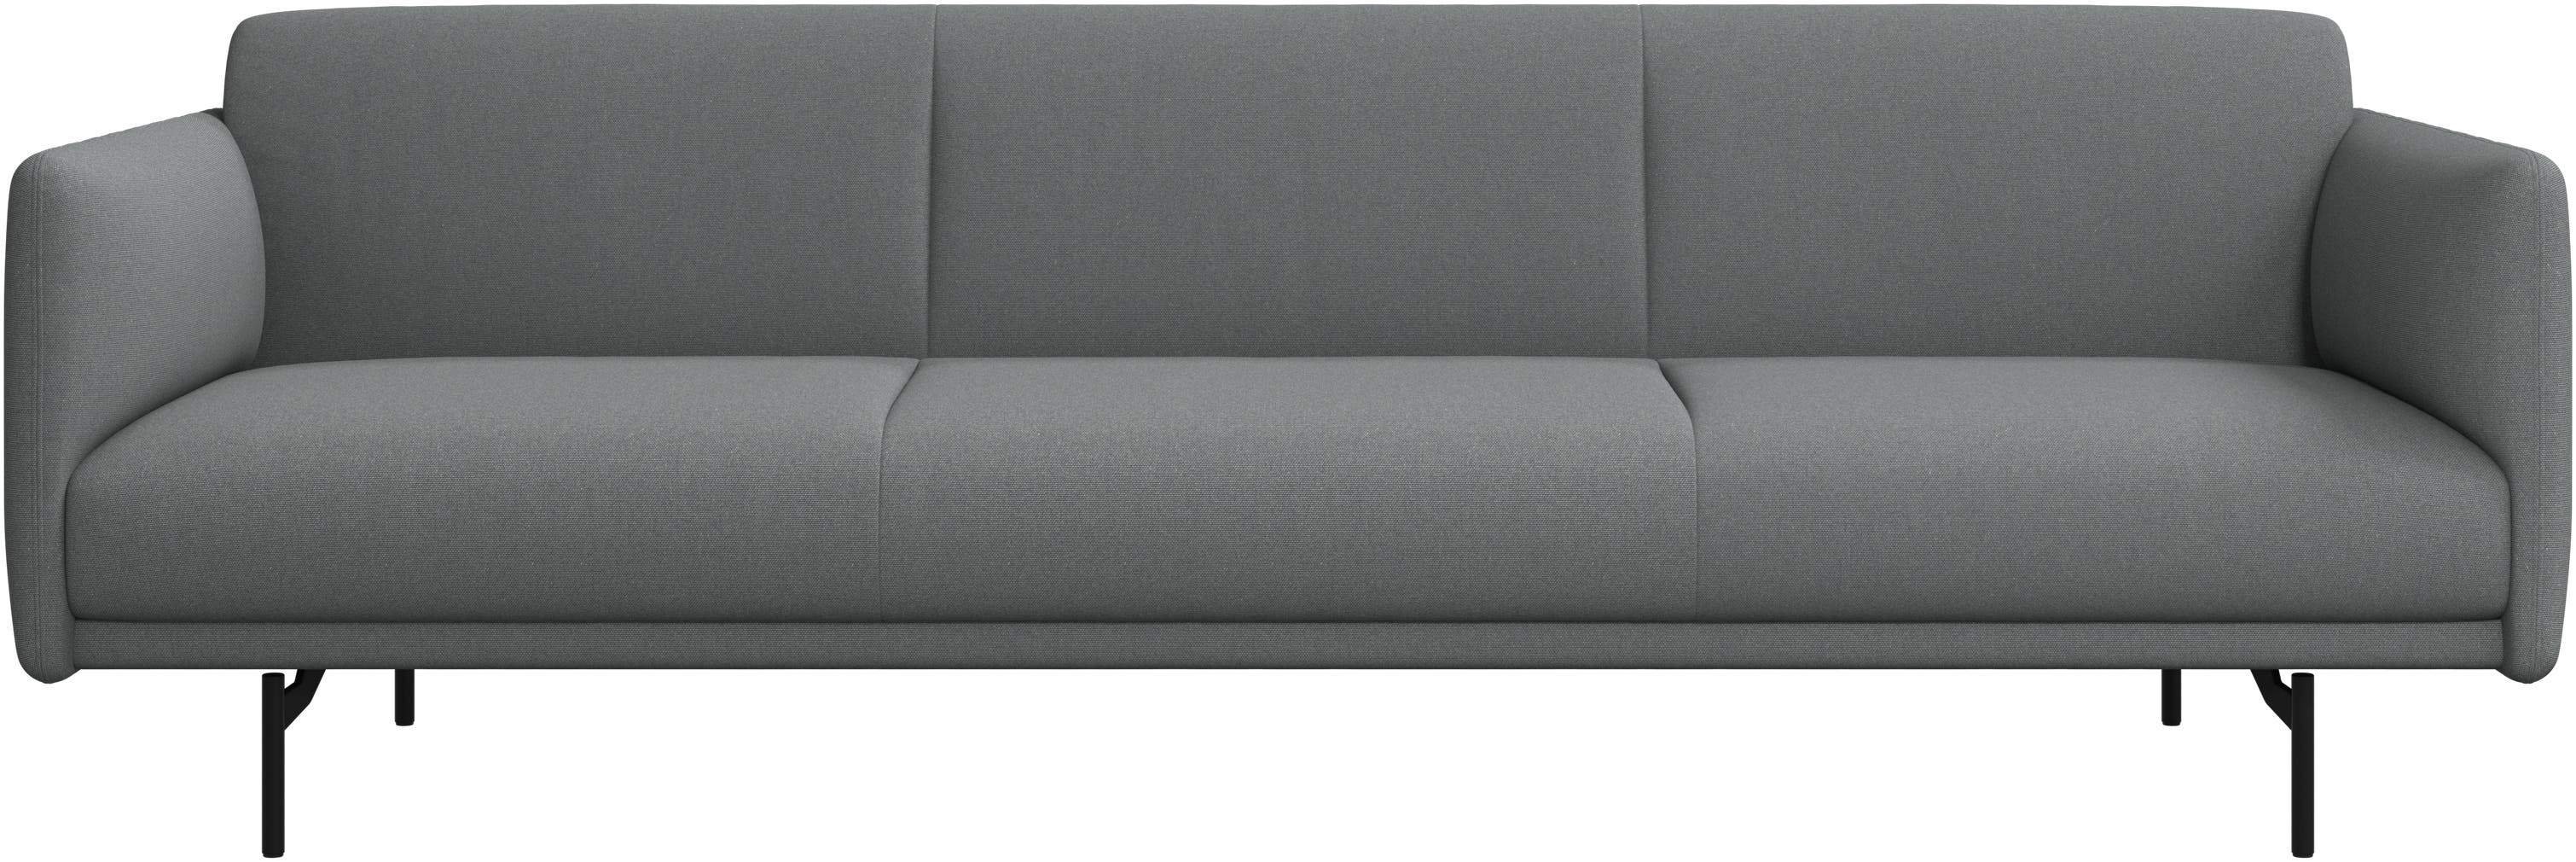 Berne 3 -személyes kanapé